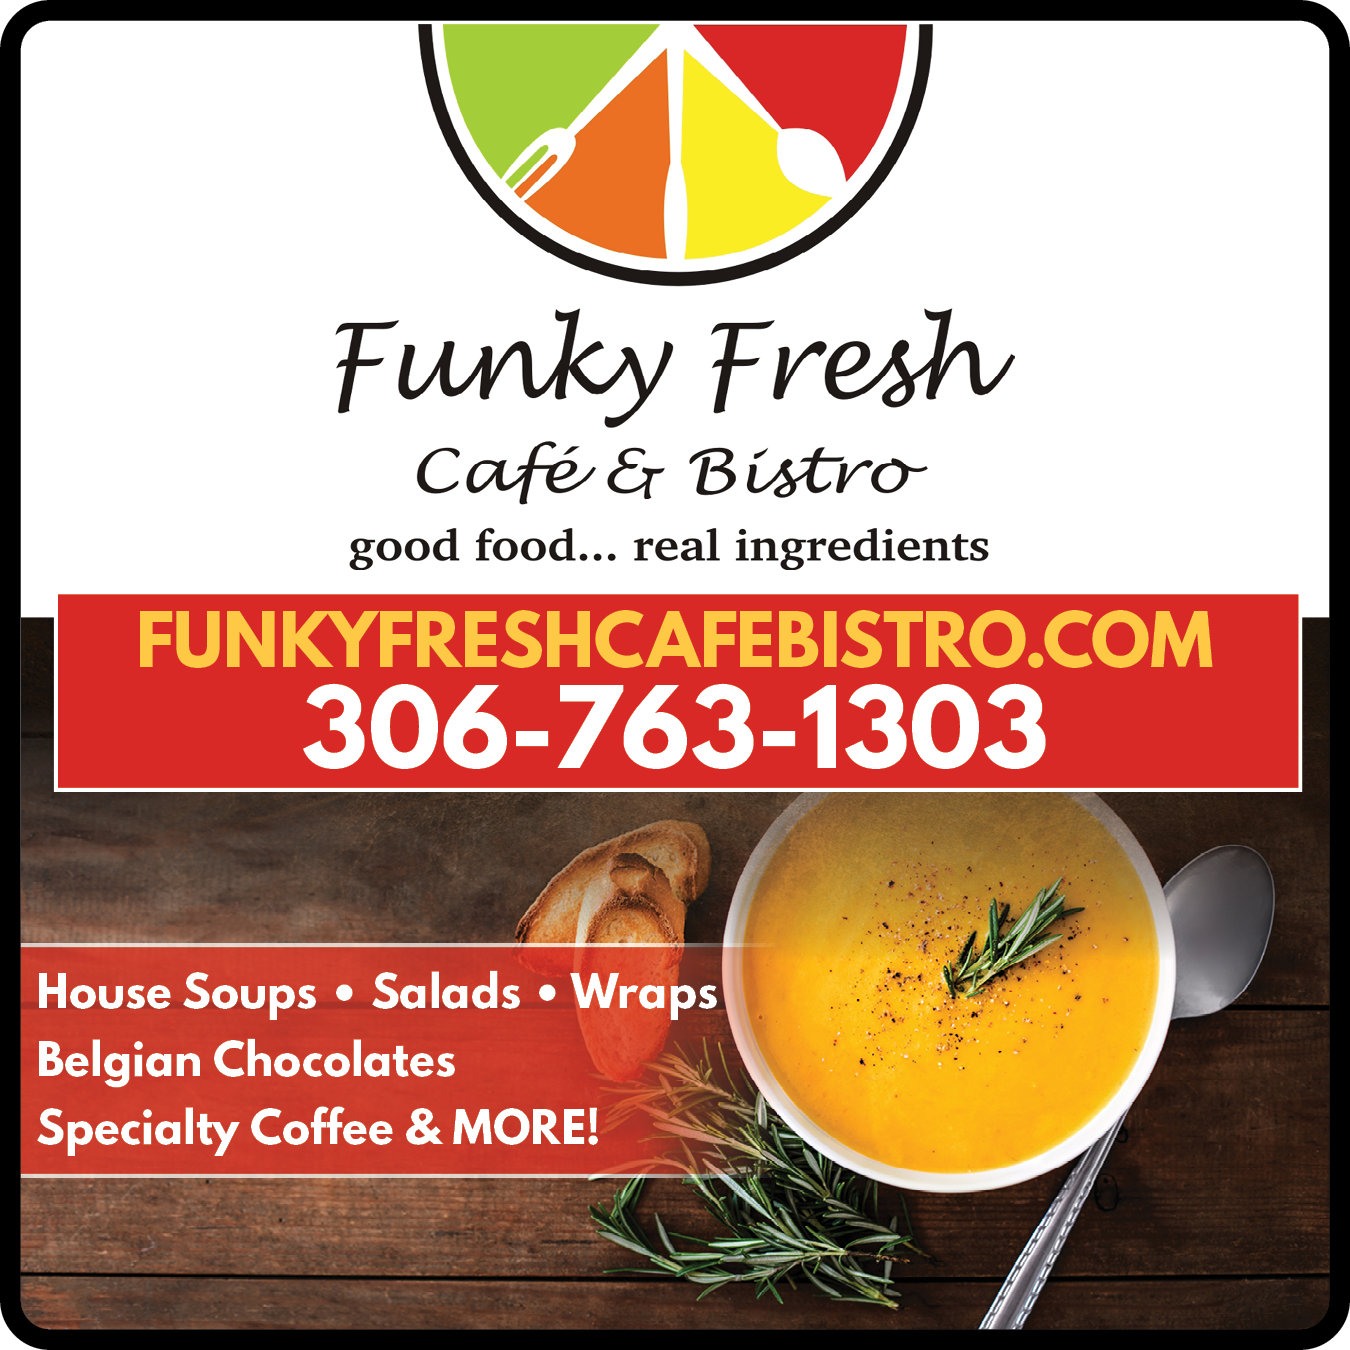 Funky Fresh Café & Bistro